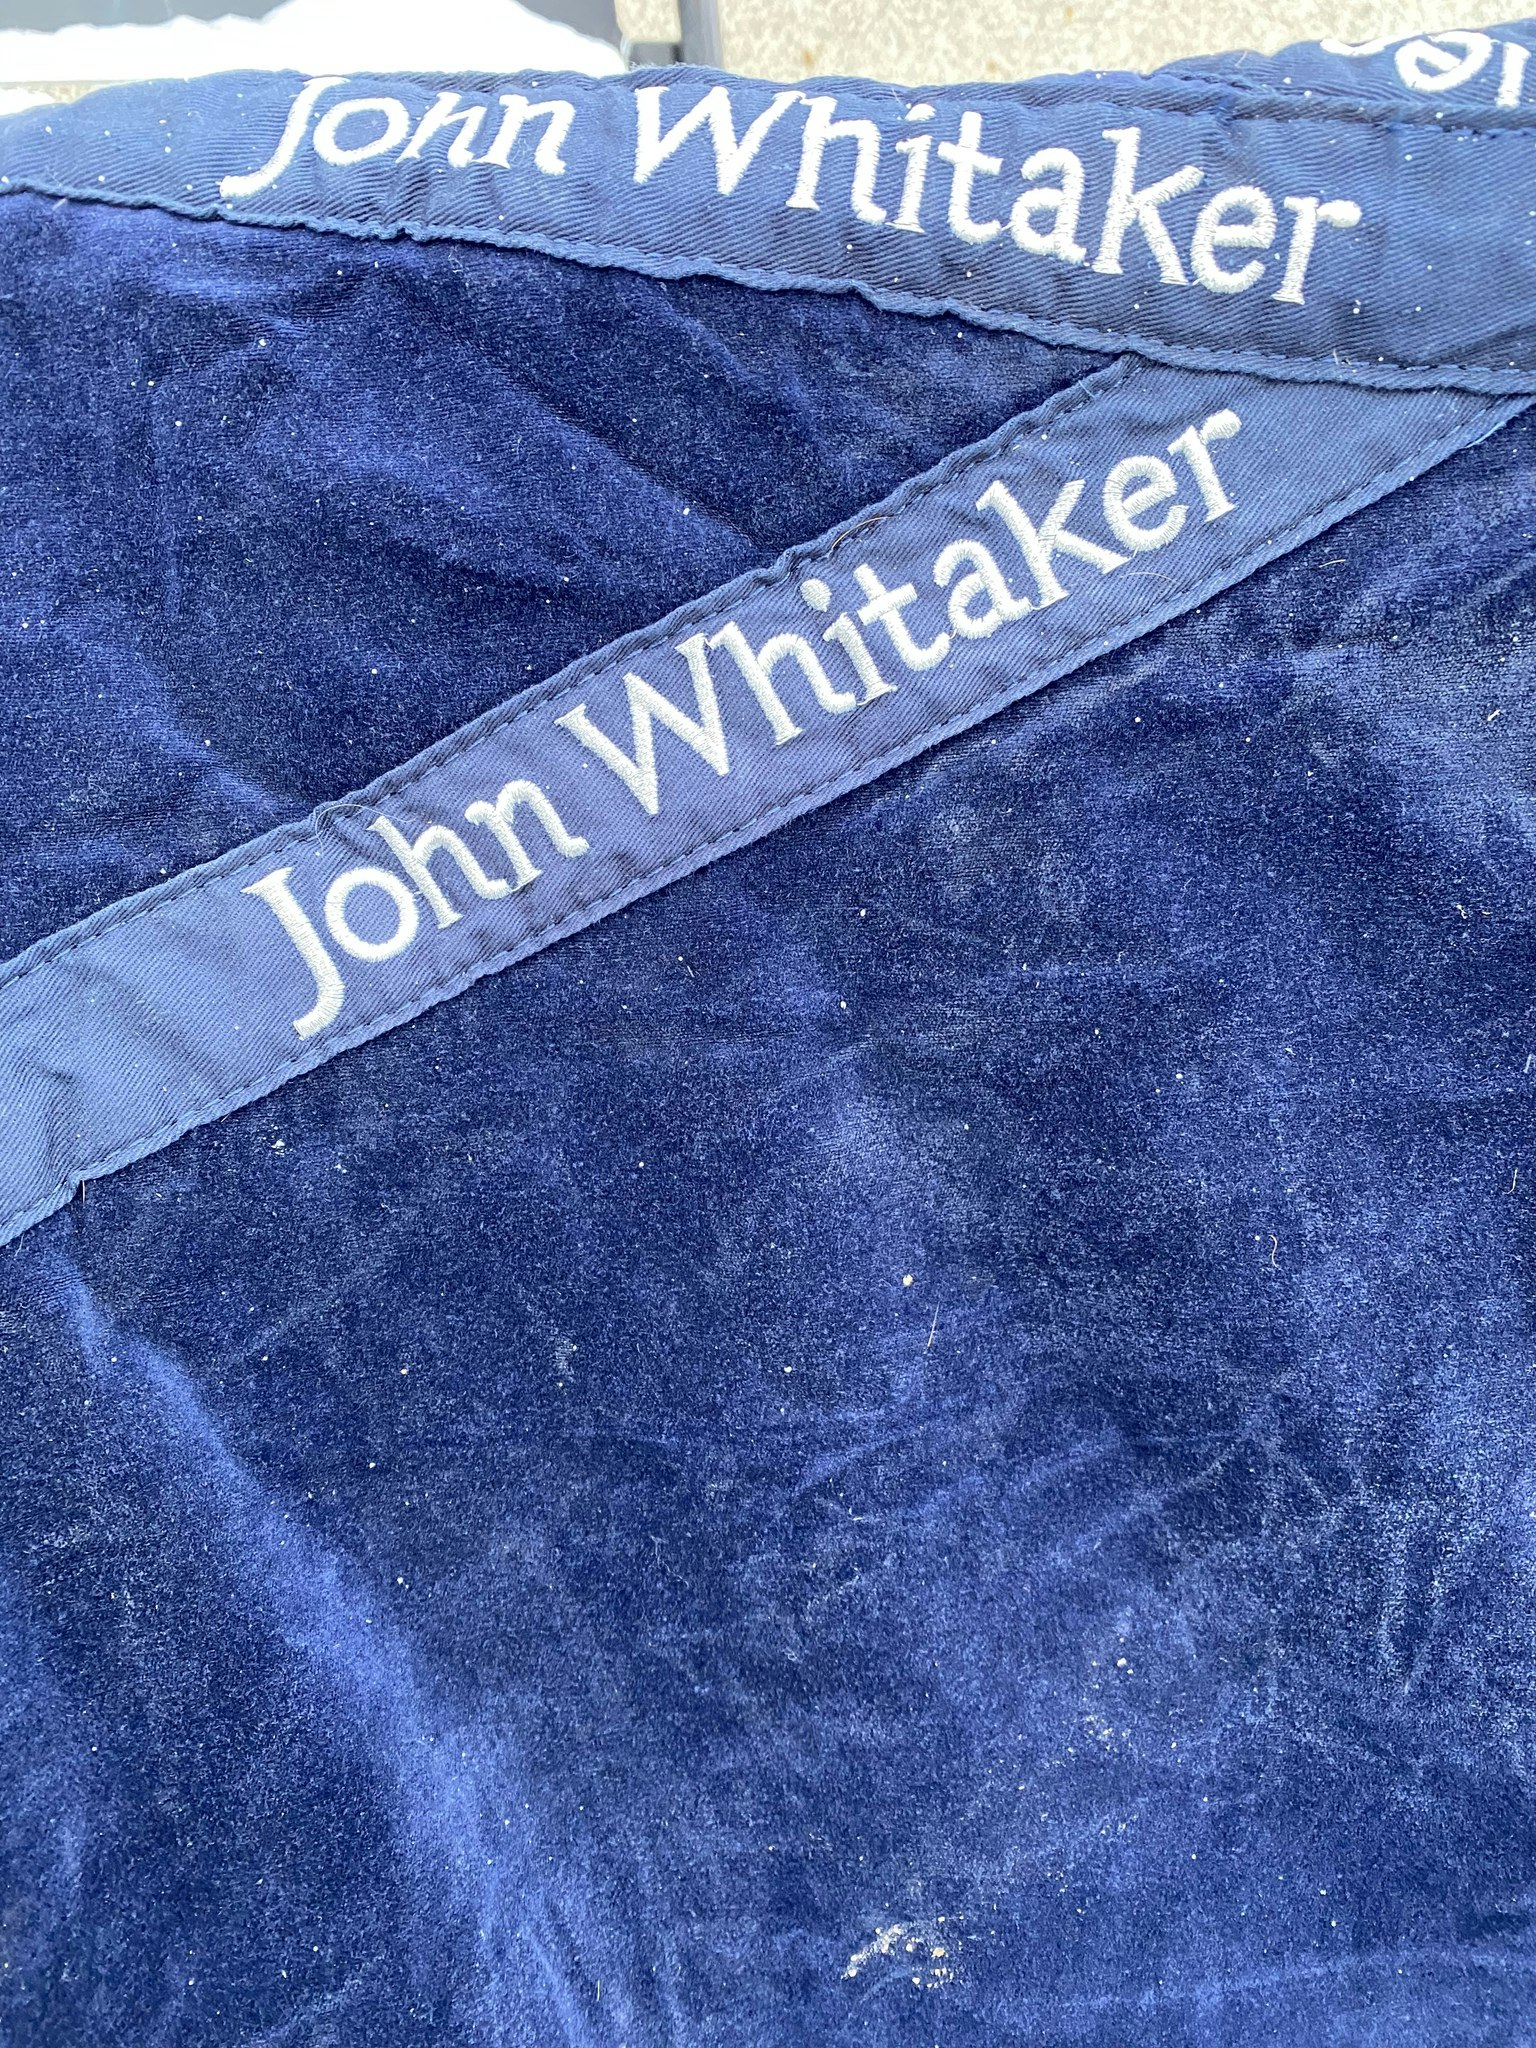 Stalltäcke John Whitaker, 155 cm